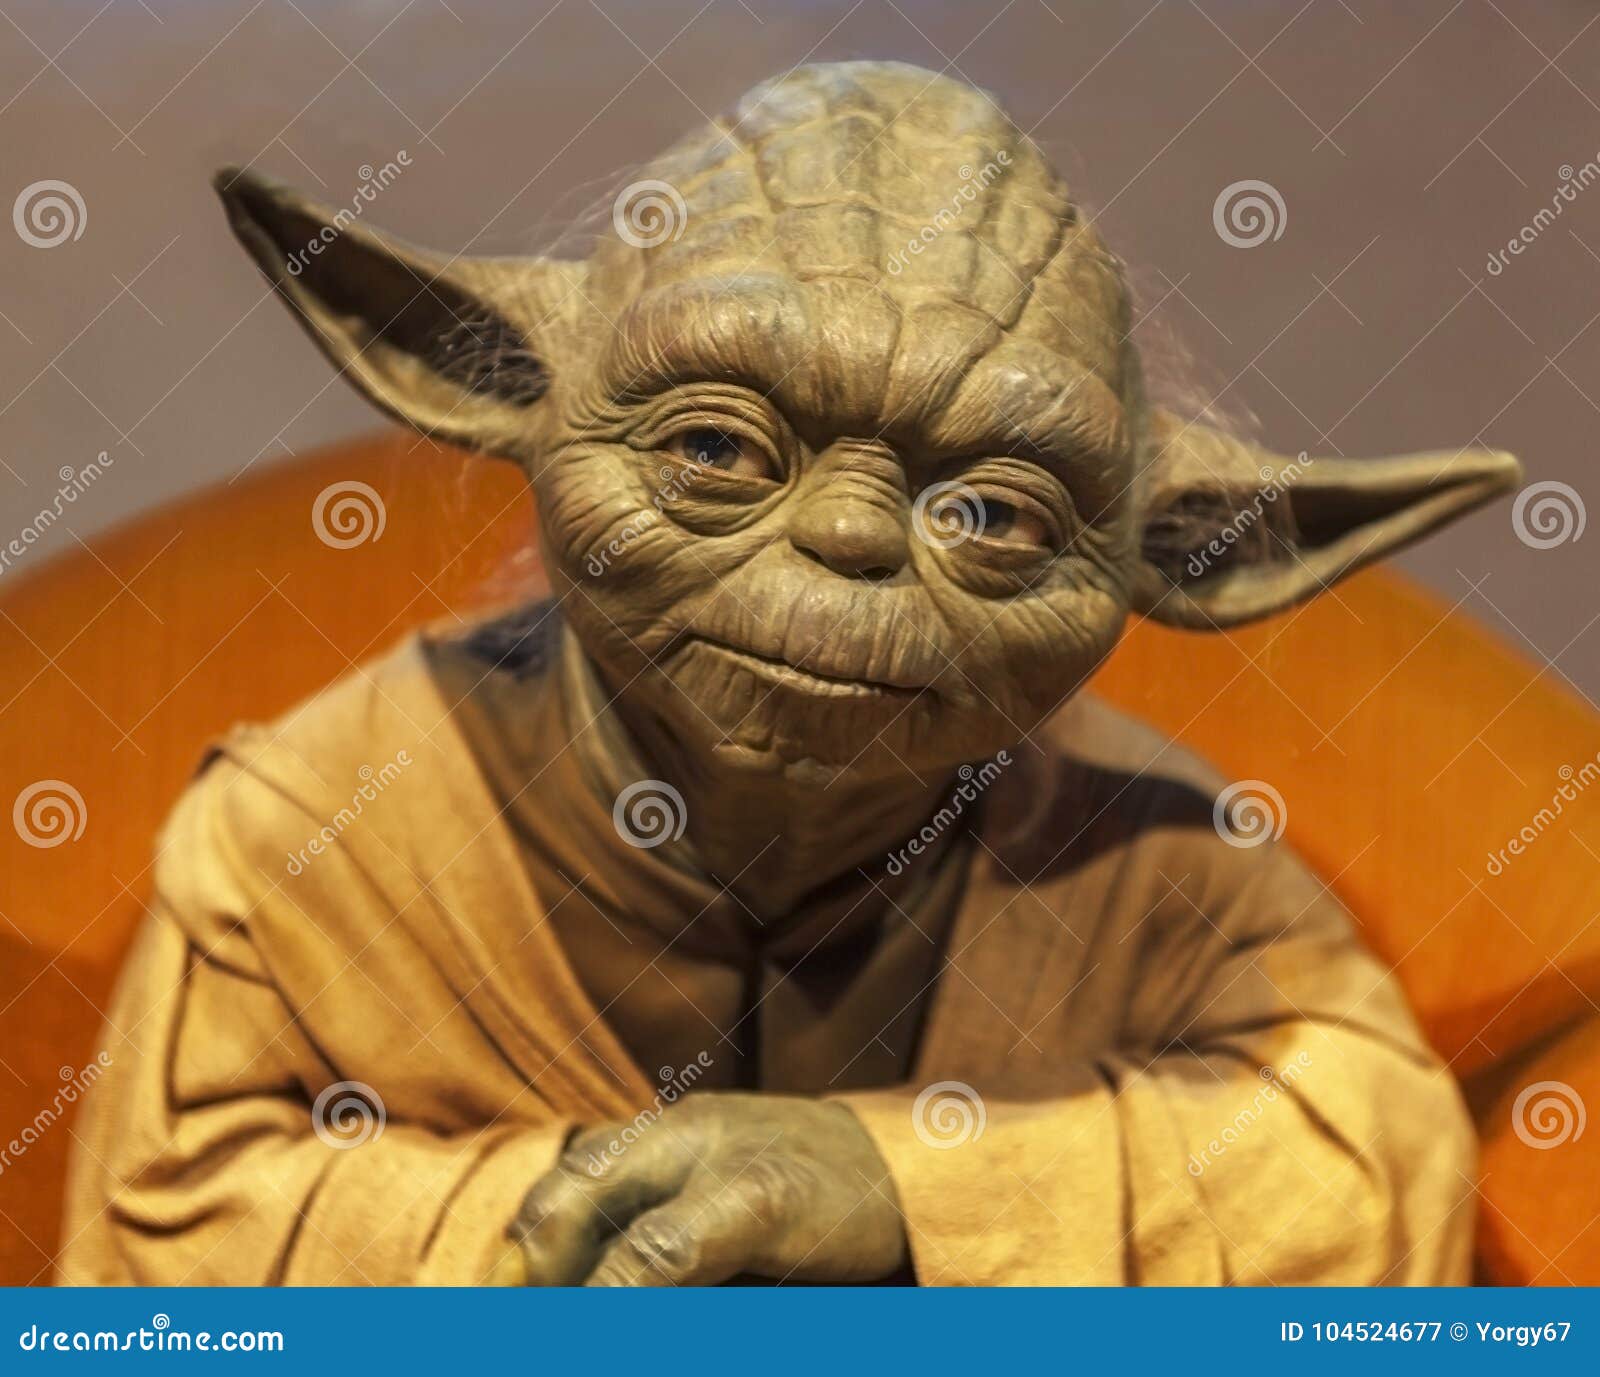 221 Maitre Yoda Photos Libres De Droits Et Gratuites De Dreamstime